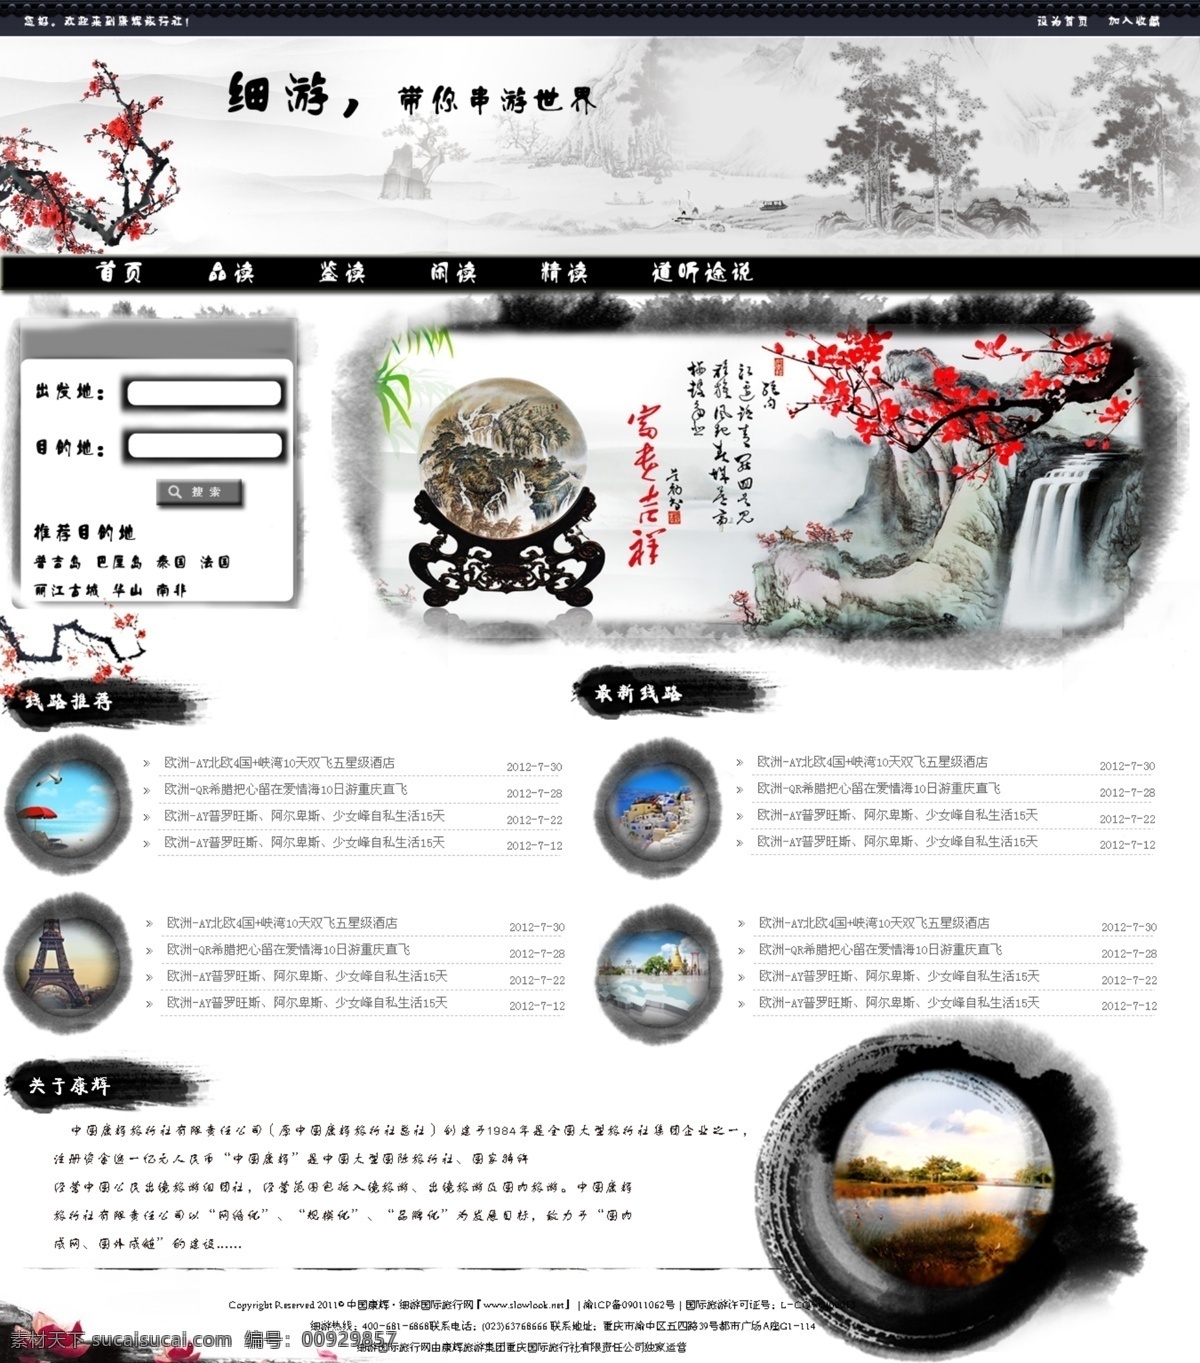 水墨 旅游 网站首页 网站 原创设计 原创淘宝设计